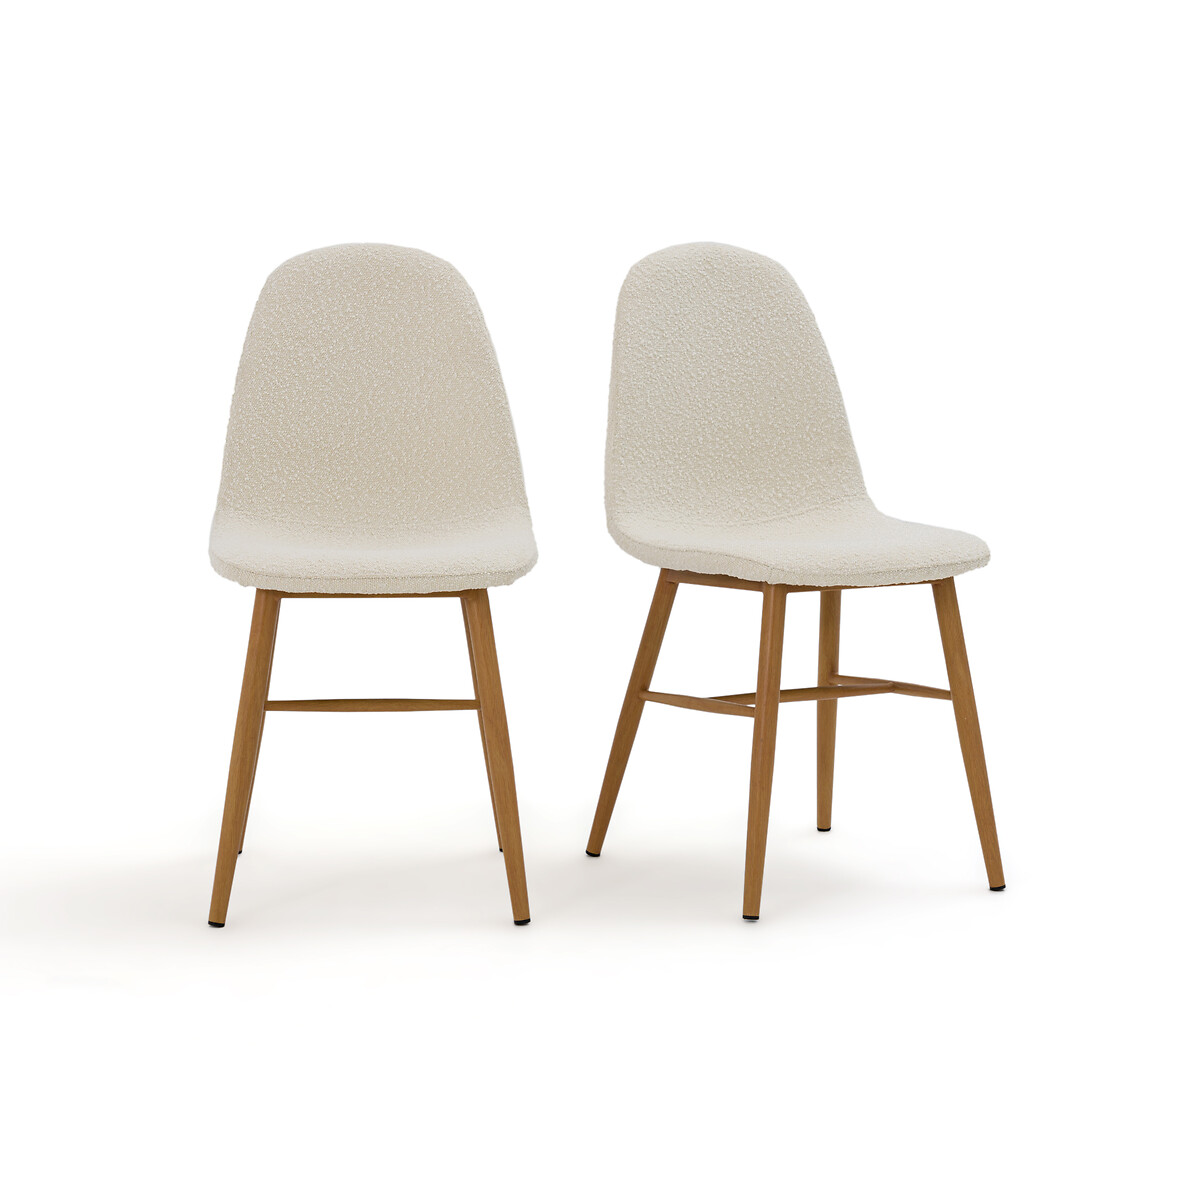 Комплект из двух стульев с Обивкой из буклированной ткани Polina единый размер бежевый